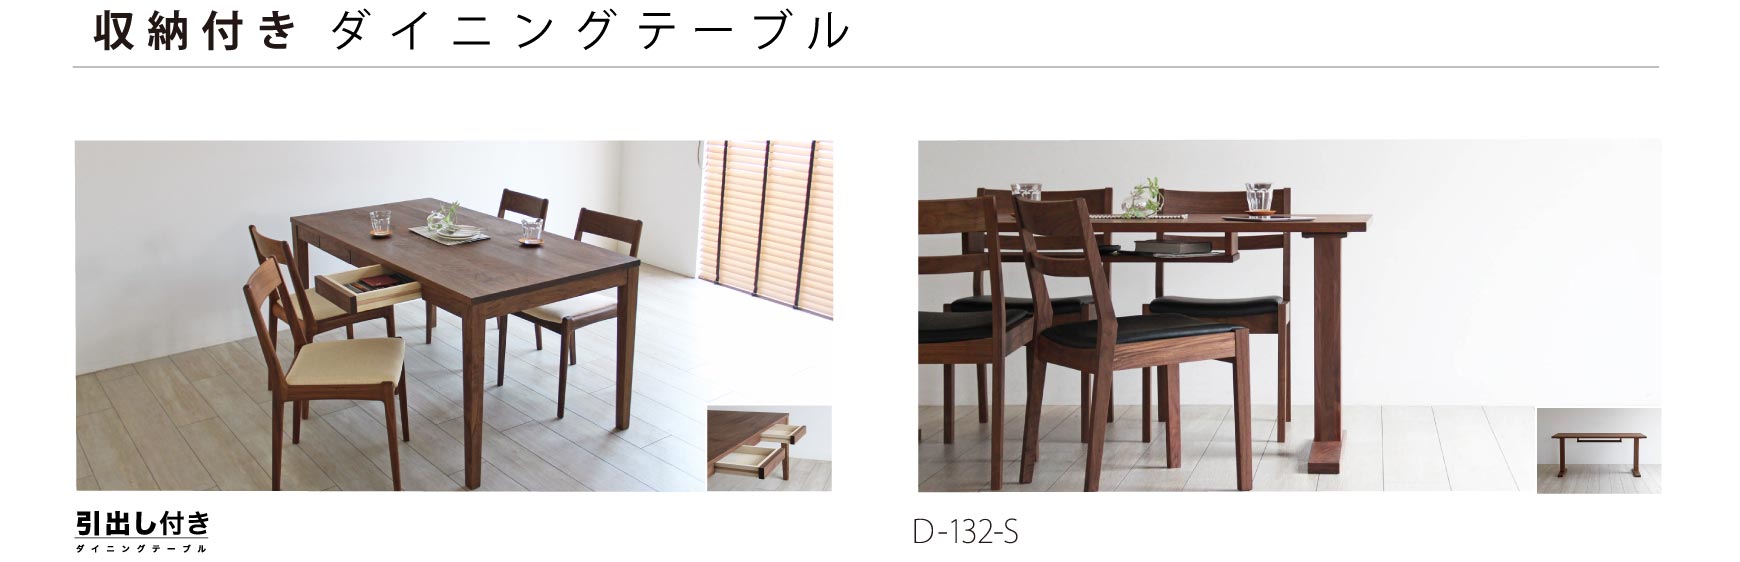 日本の職人が丁寧につくり上げる上質なダイニングテーブル